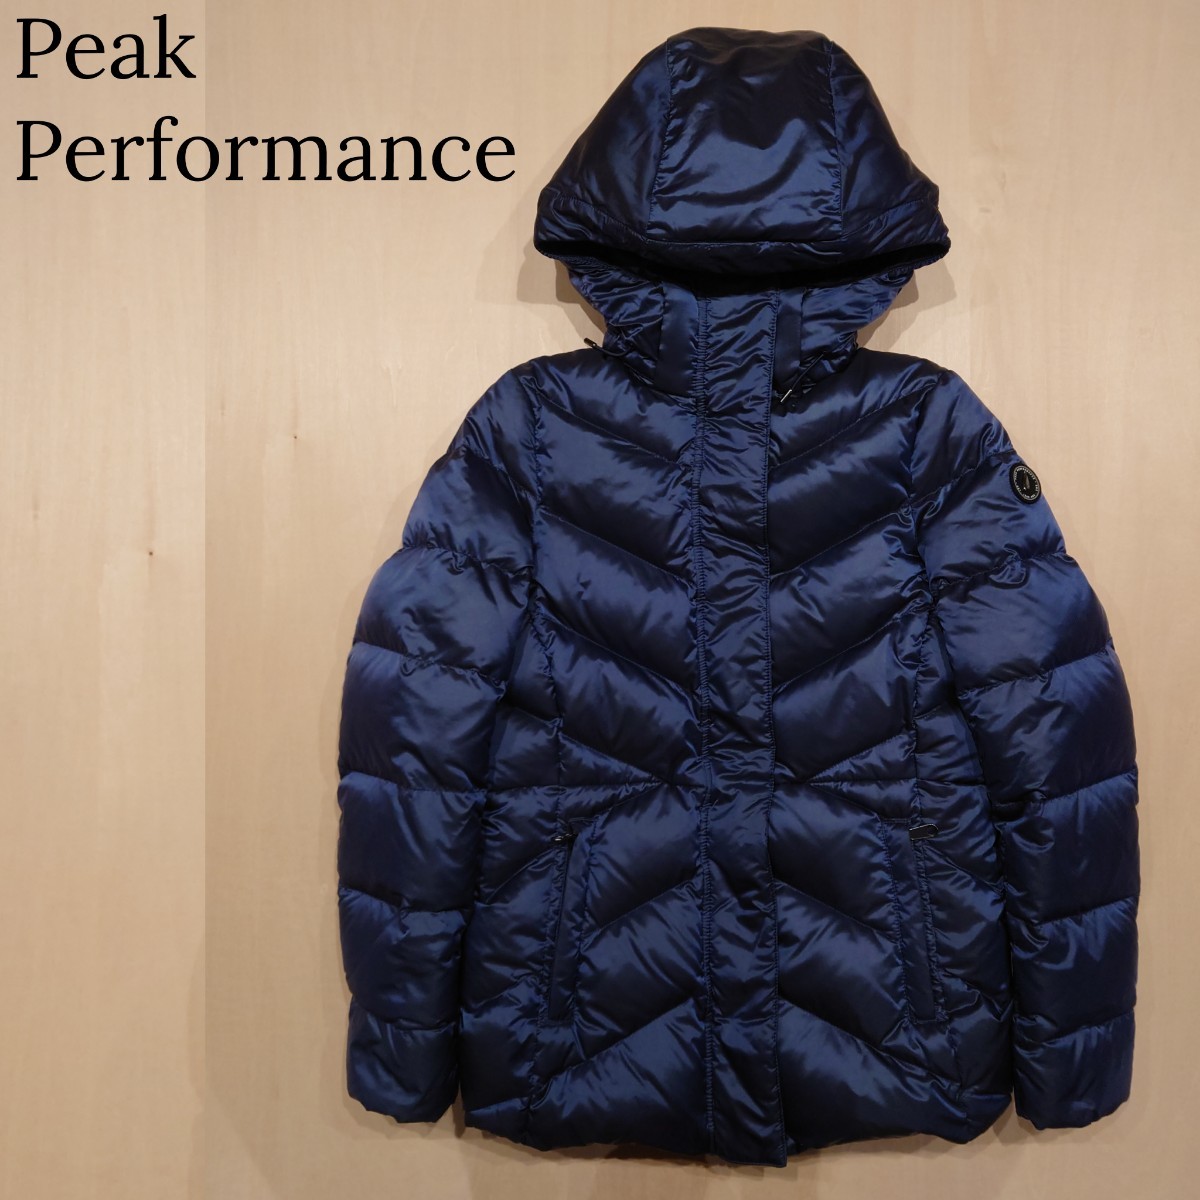 Peak Performance ダウンジャケット valdis jacket パーカー レディース ピークパフォーマンス XS 2312